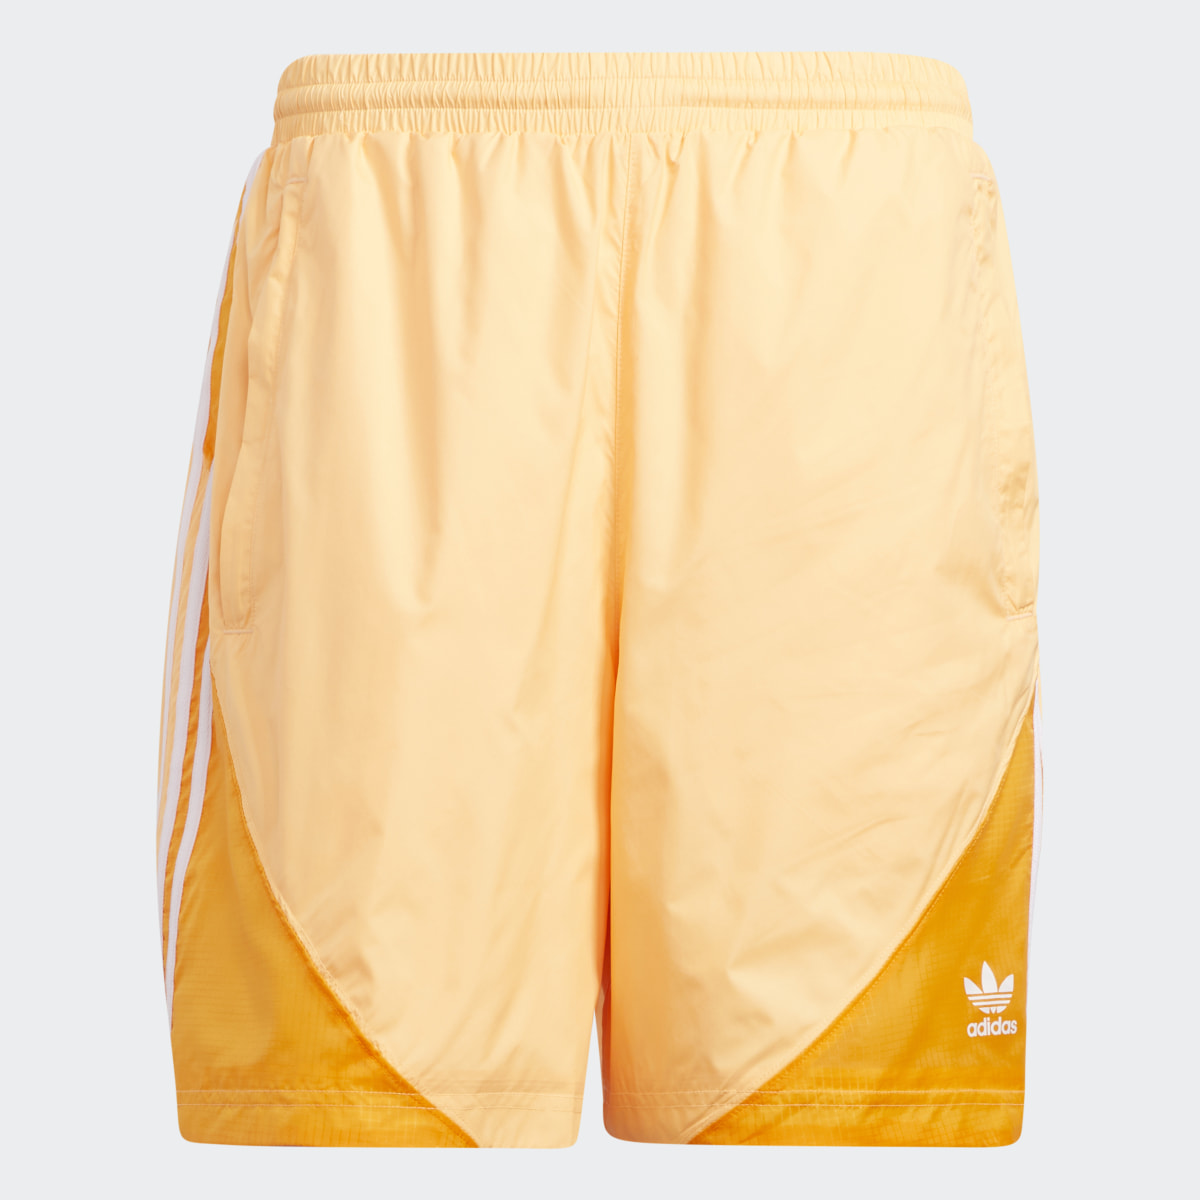 Adidas Summer SST Shorts. 4